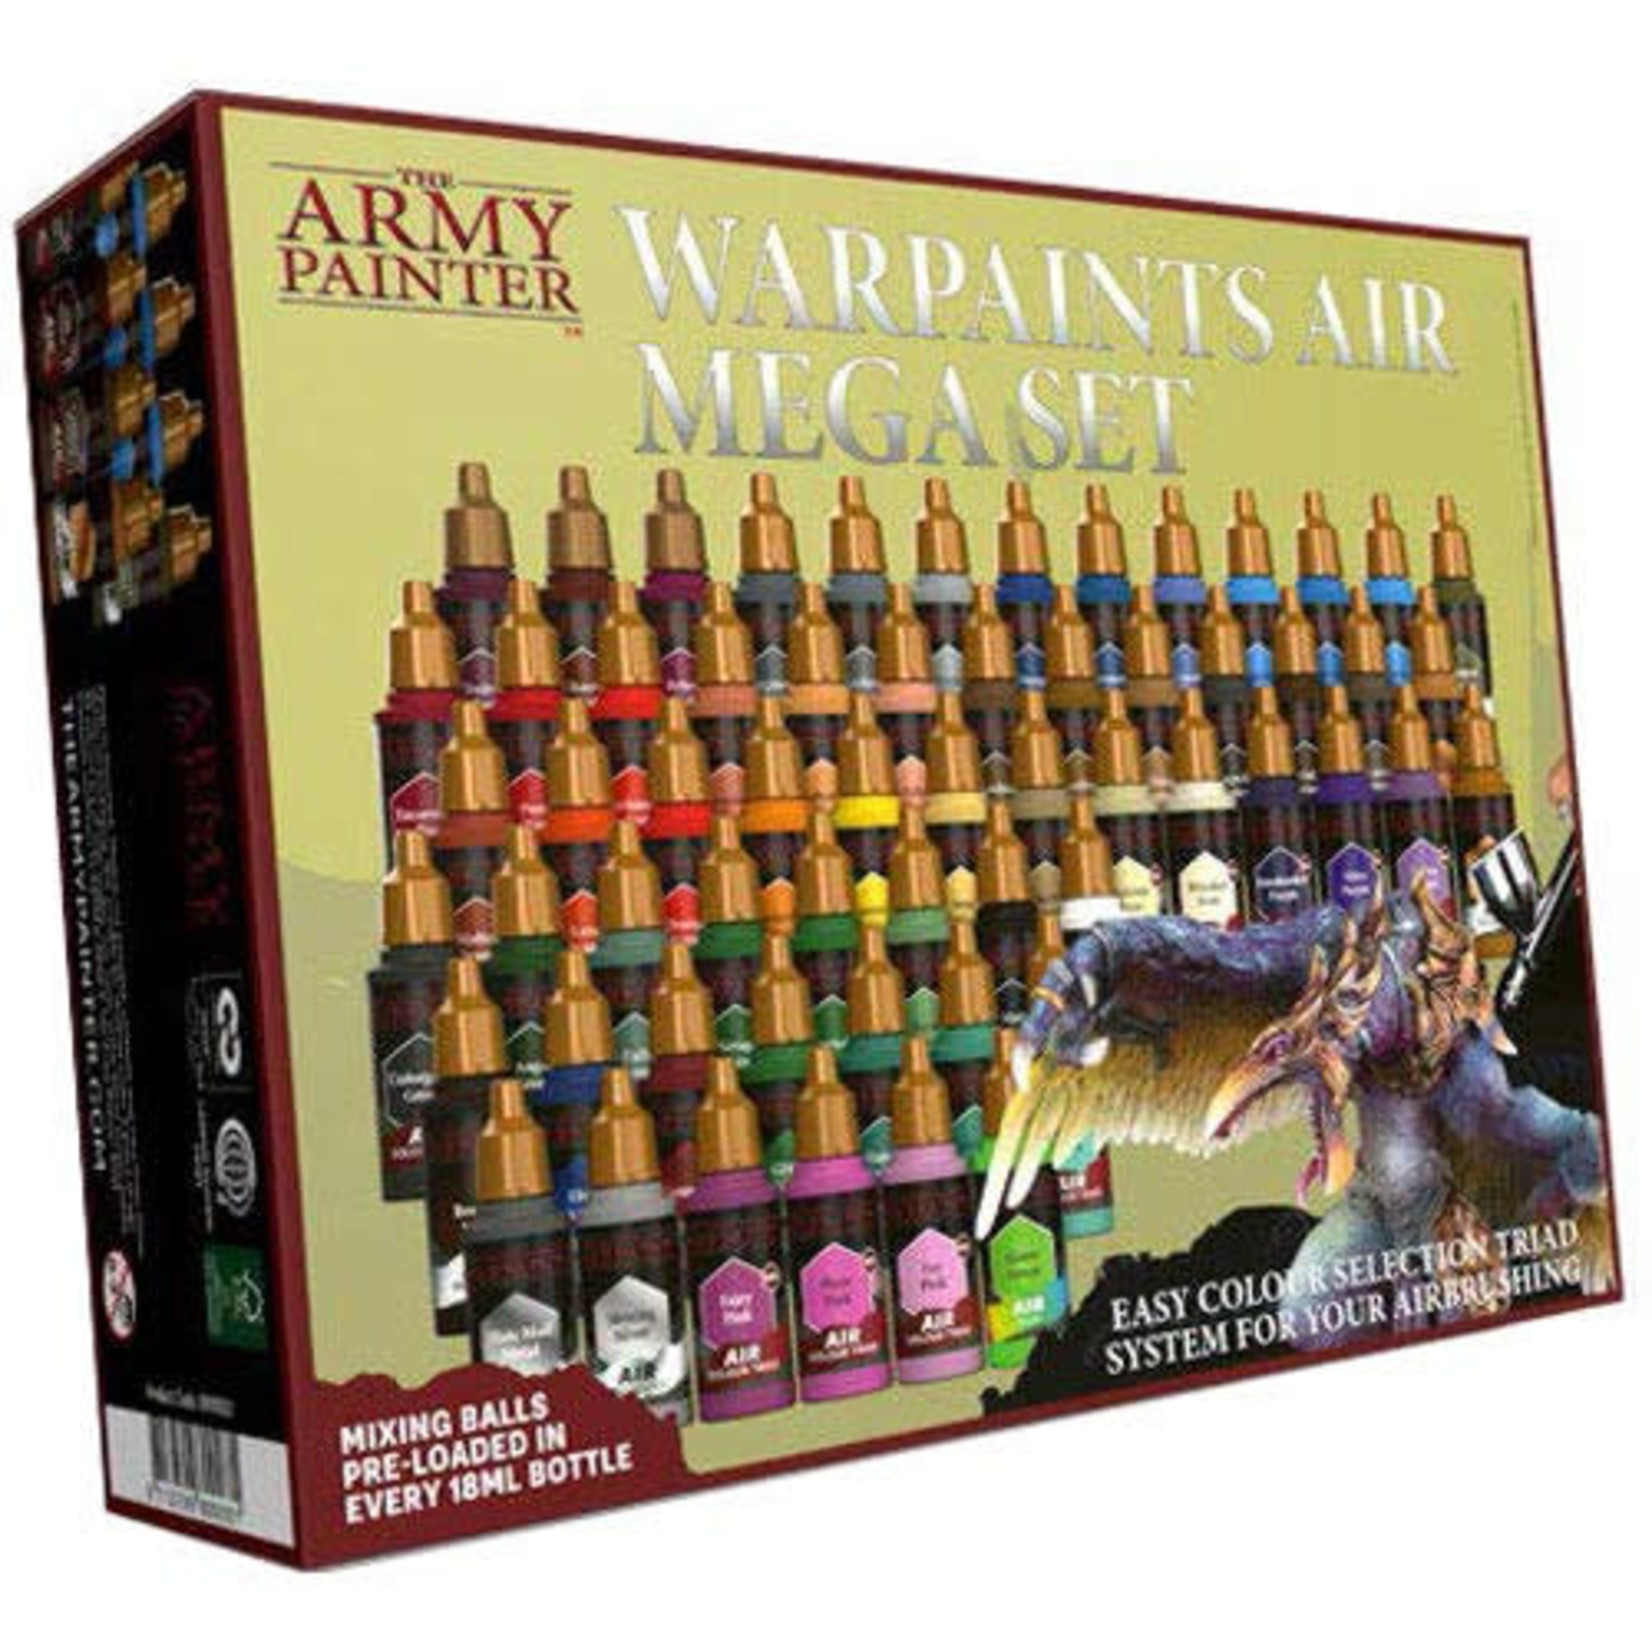 Army Painter Army Painter Warpaints Air Mega Set